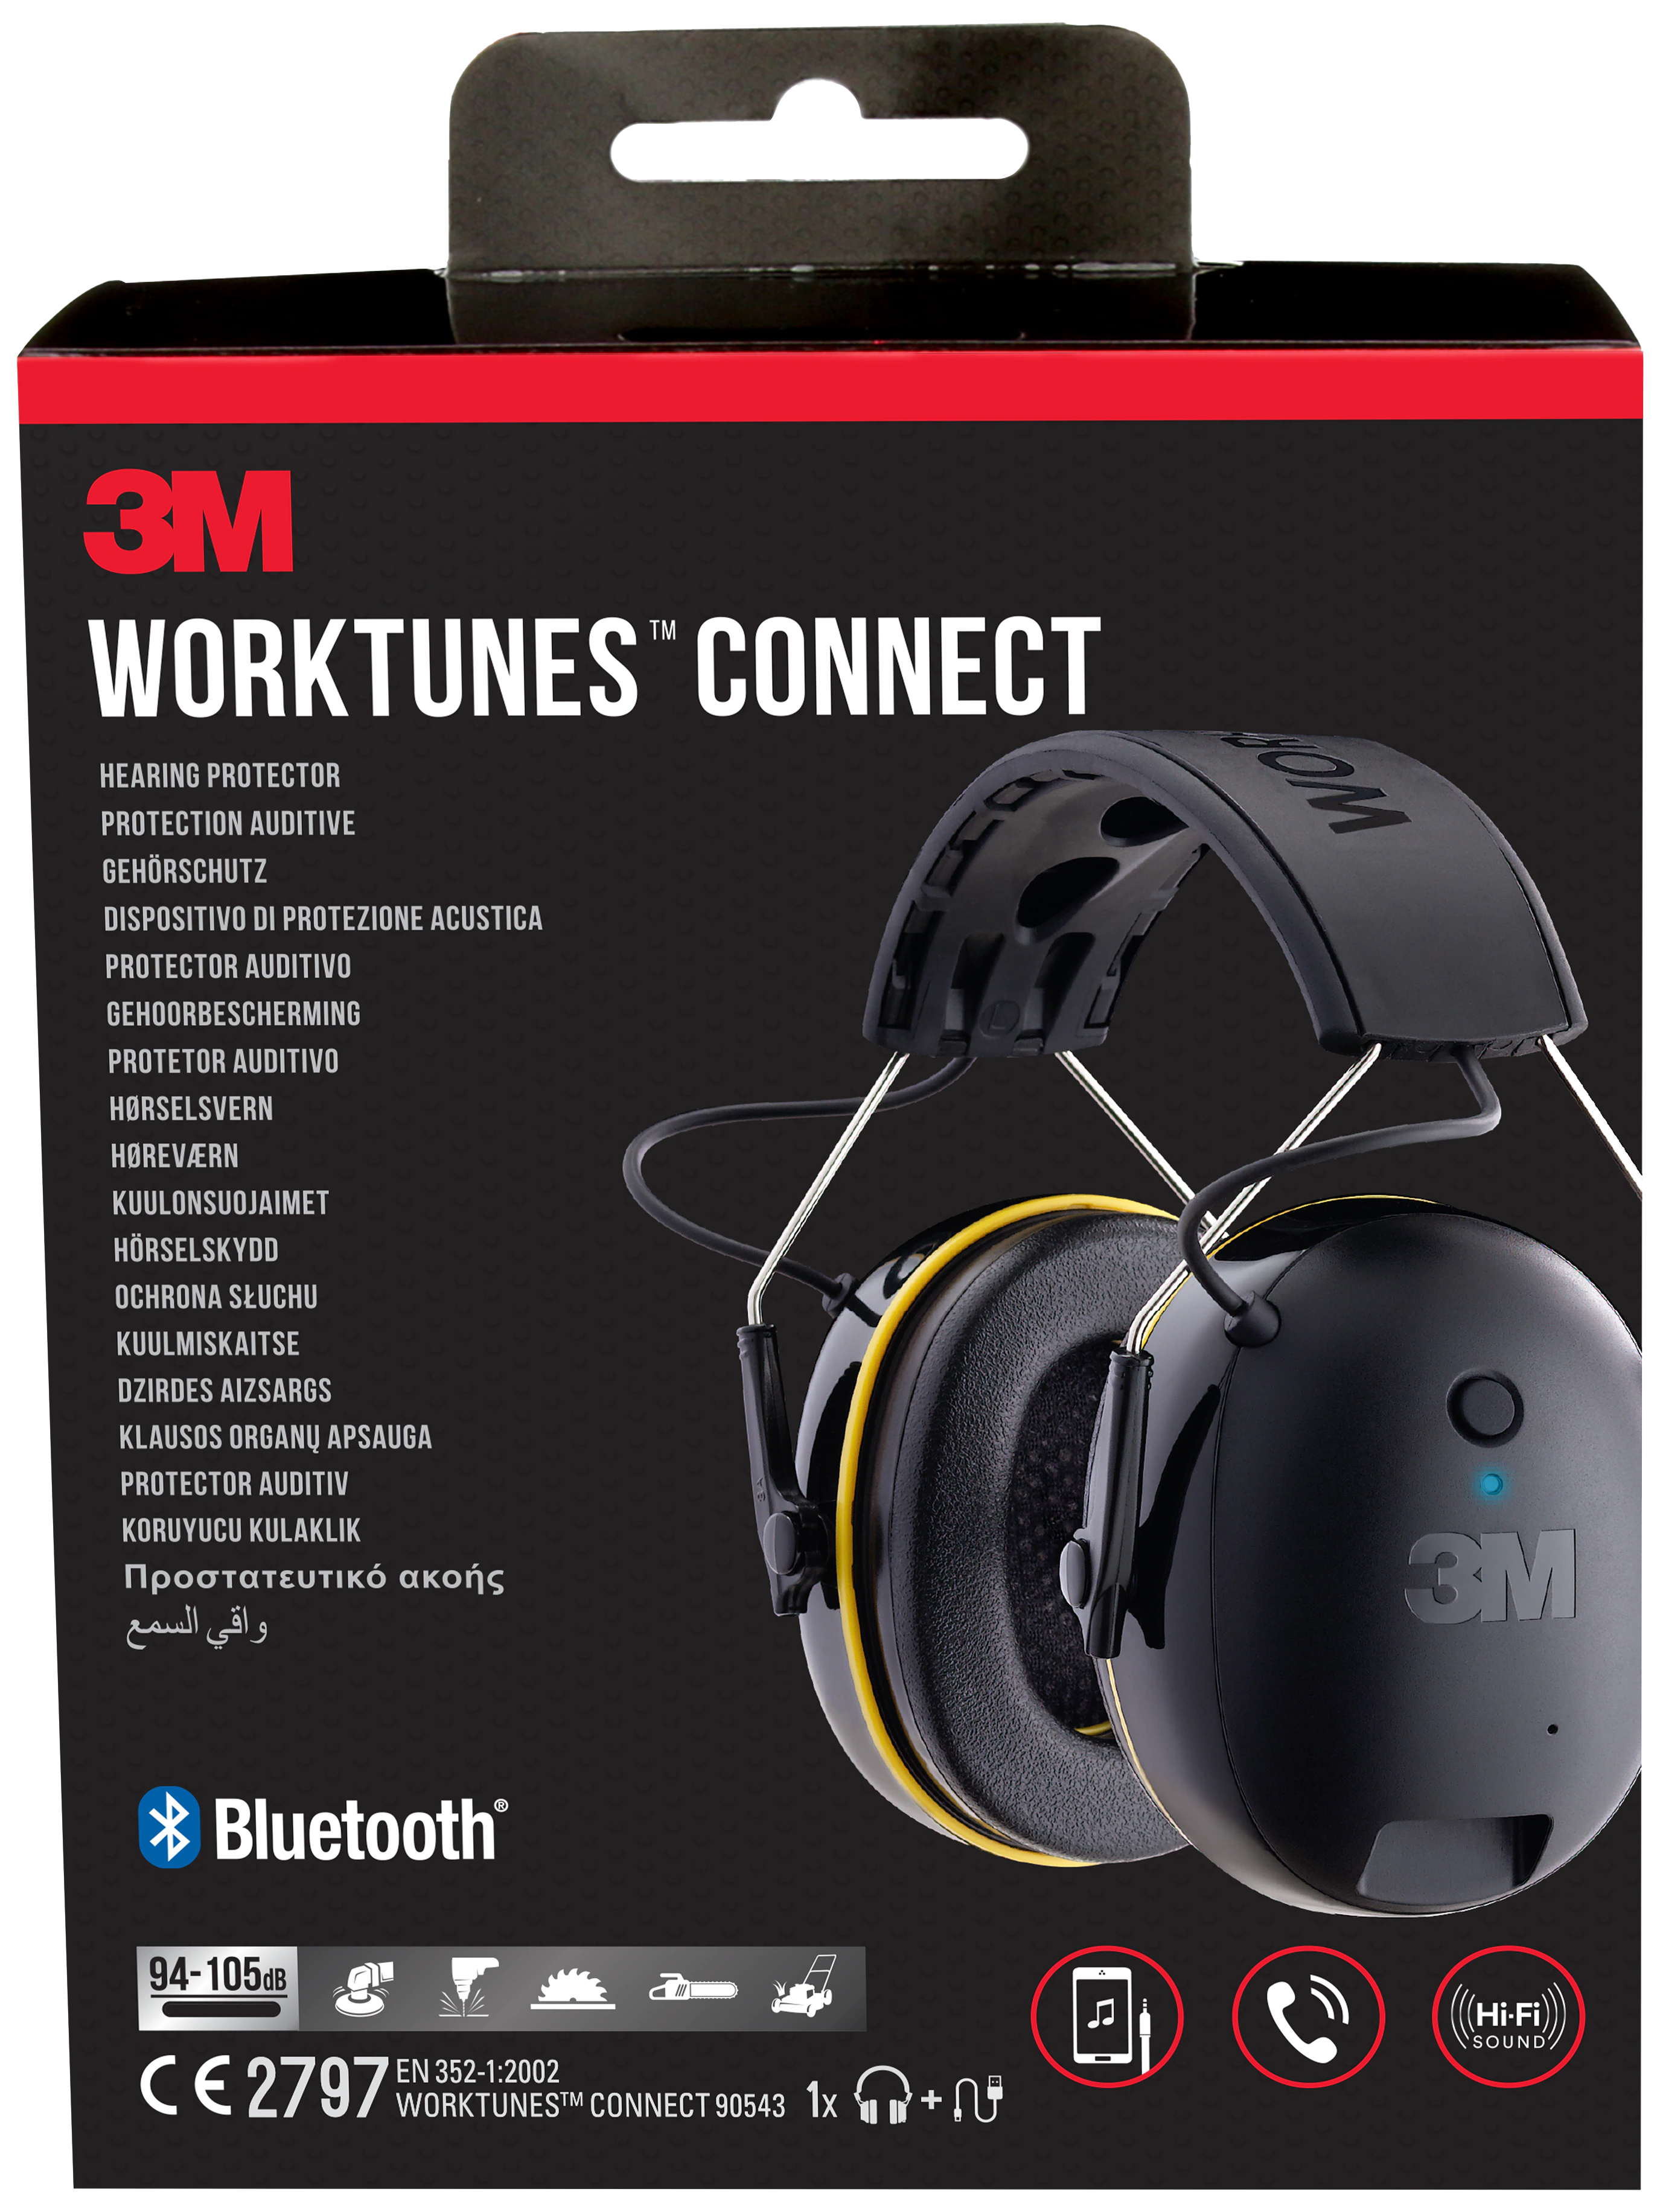 WorkTunes Connect høreværn m/Bluetooth, 90543EC1 429791